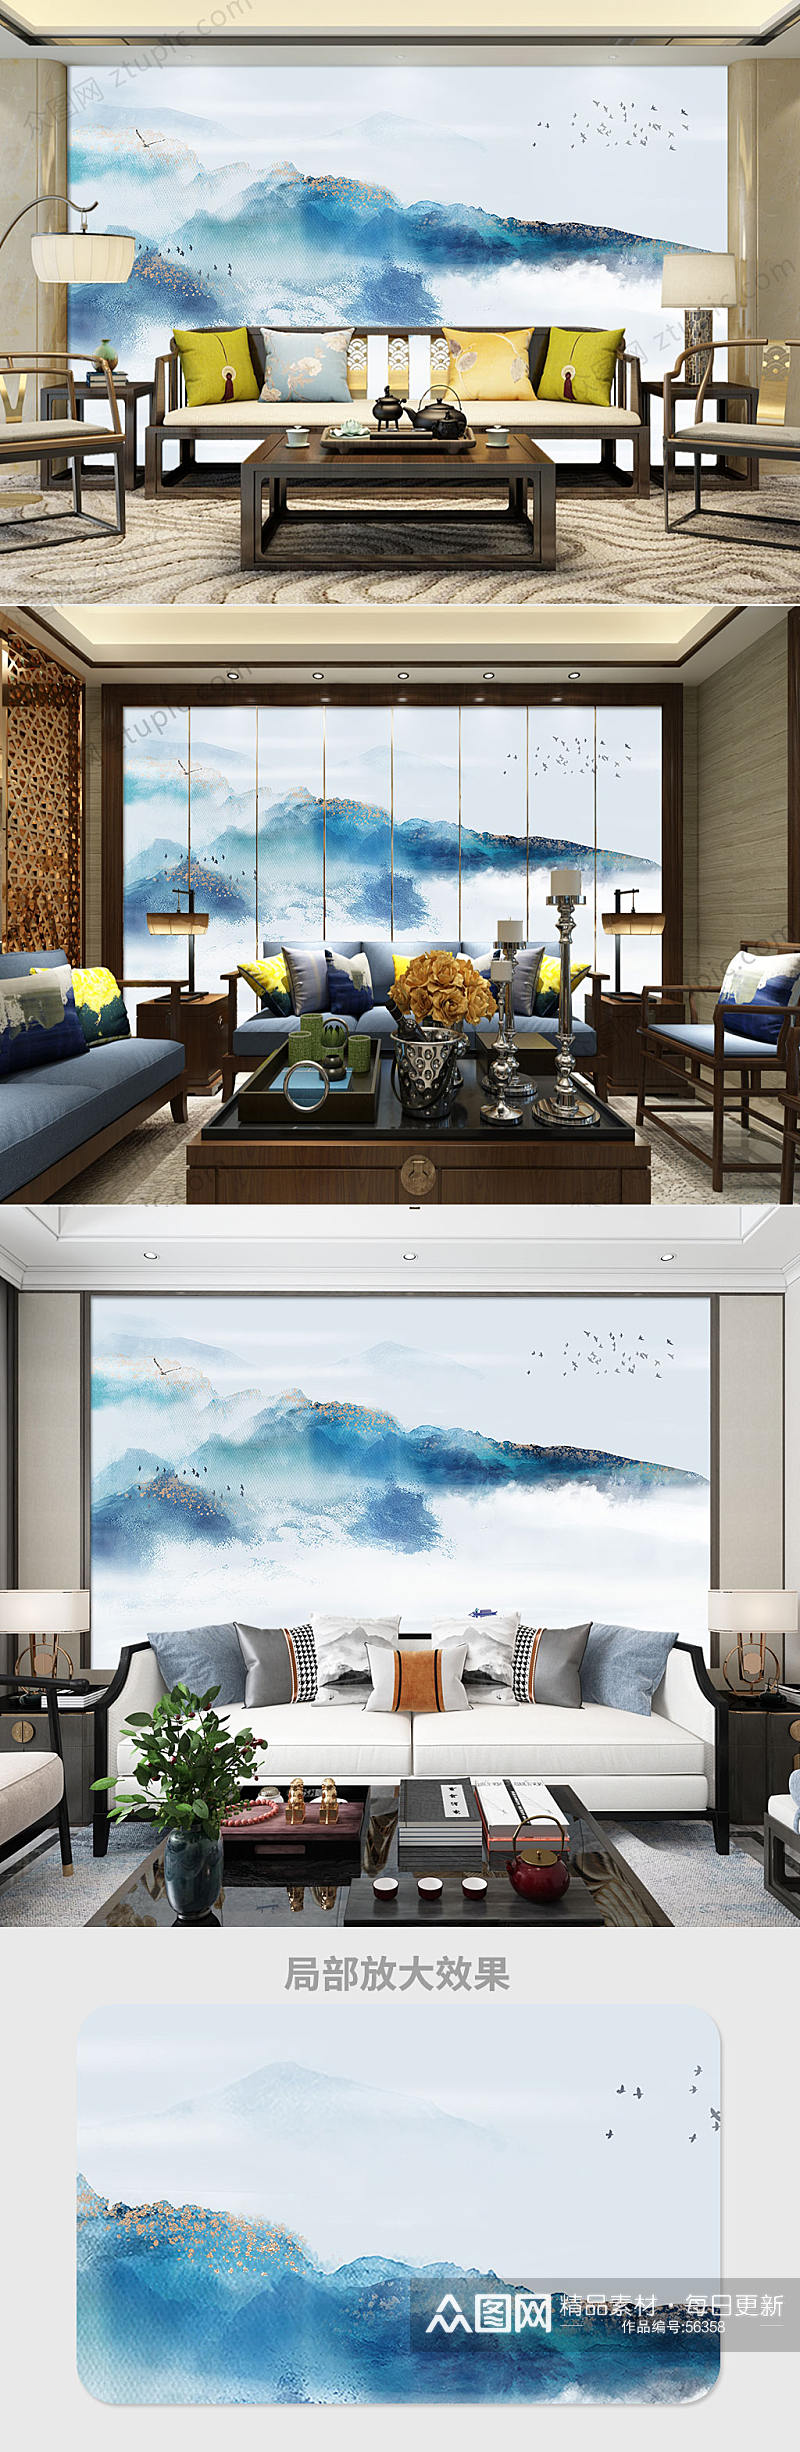 中国风水墨山水沙发背景墙装饰画素材